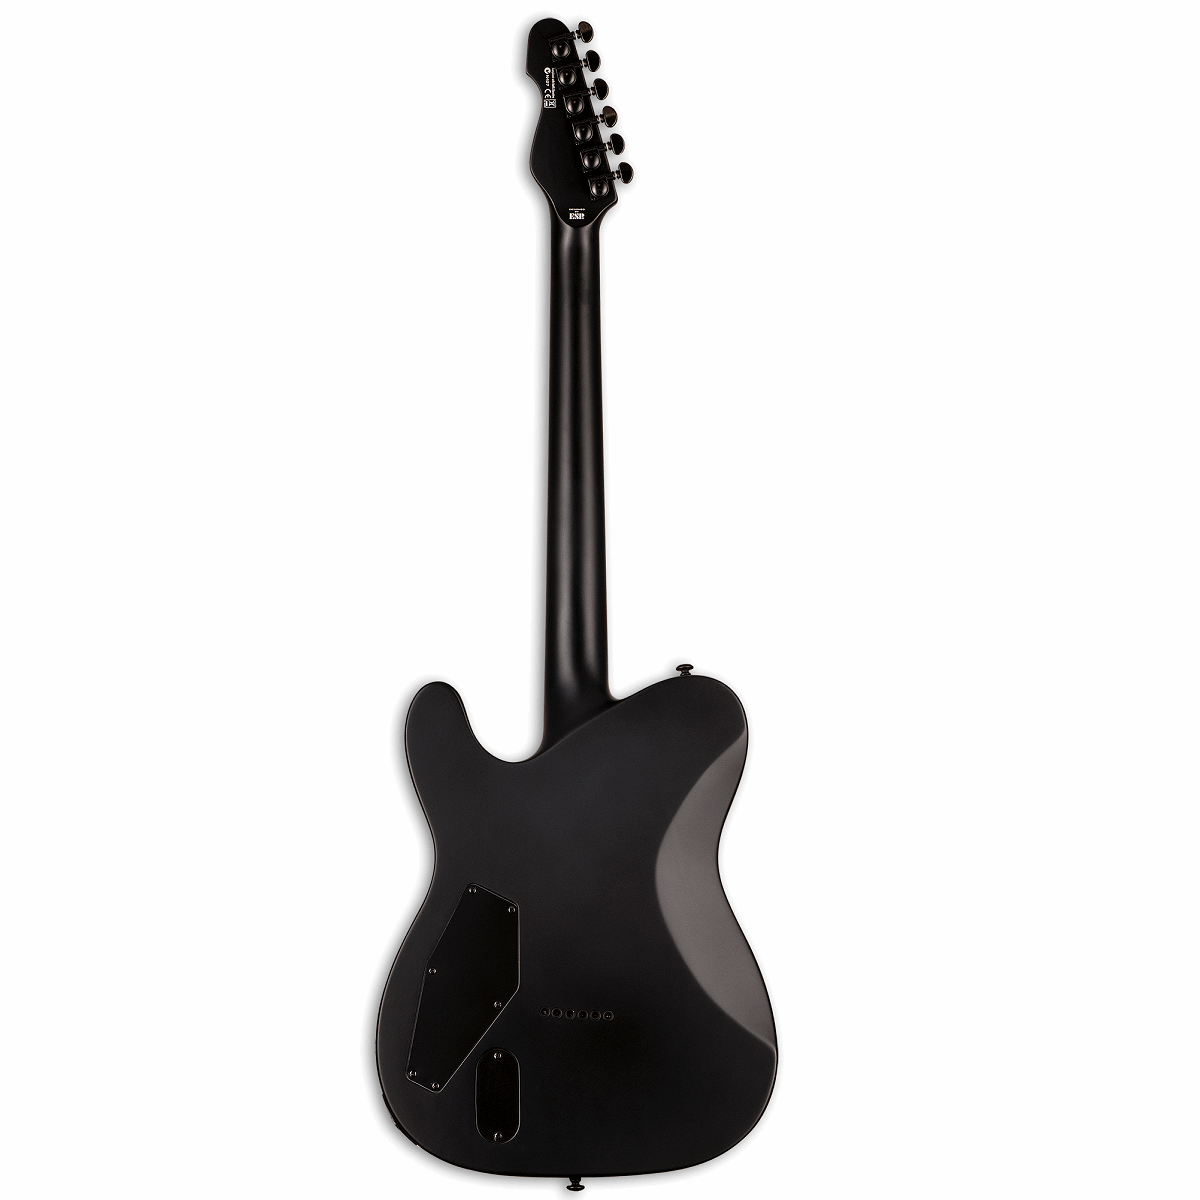 ESP LTD TE-401 Electric Guitar - Black Satin